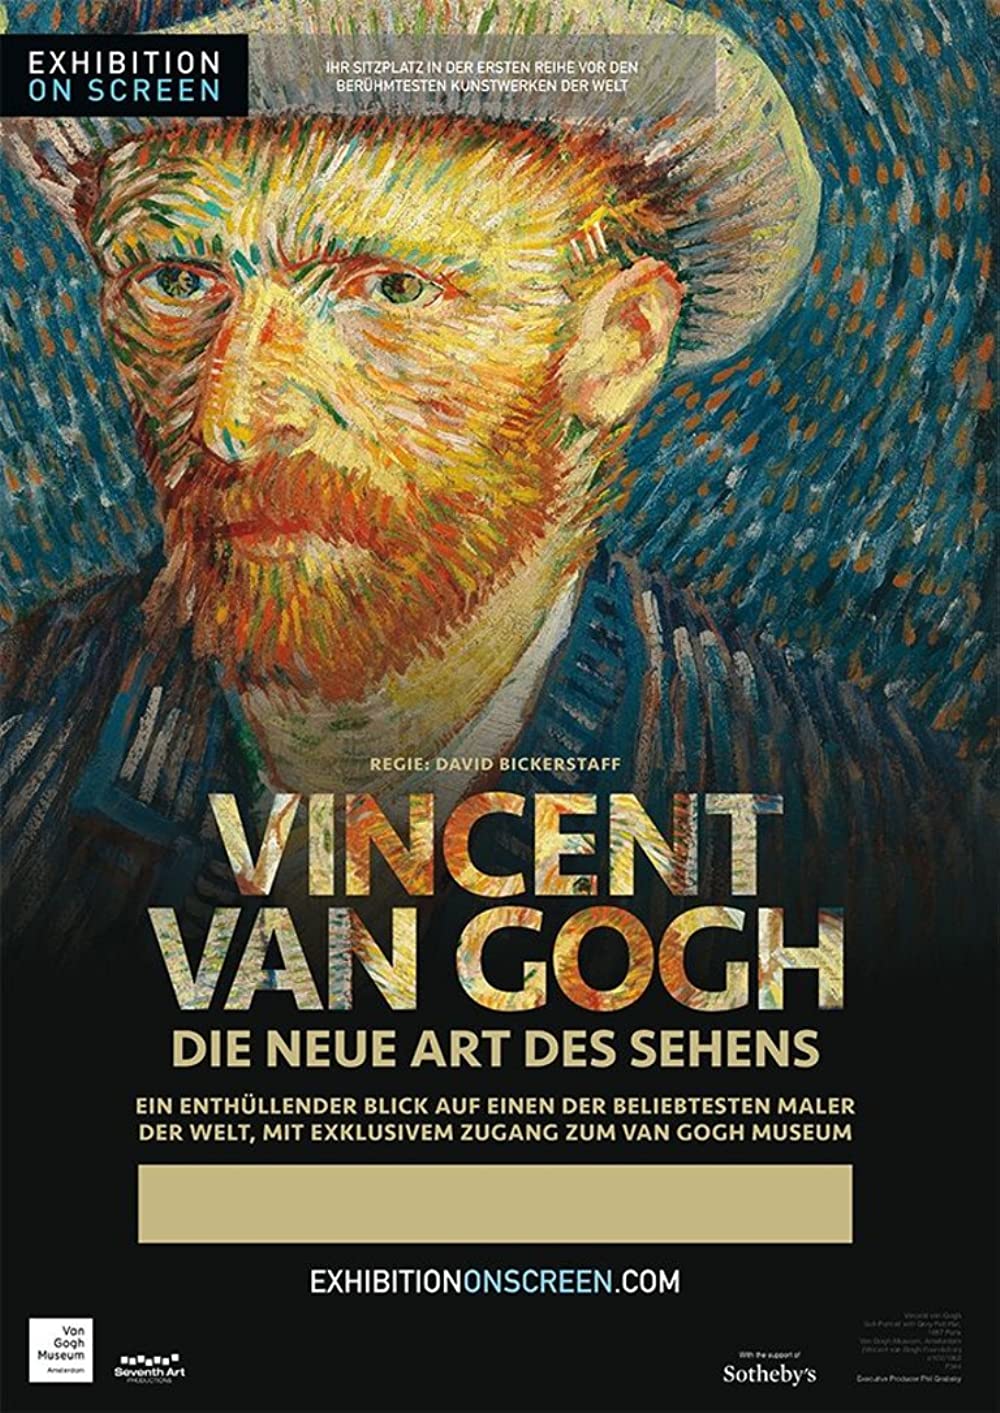 Vincent van Gogh: Die neue Art des Sehens